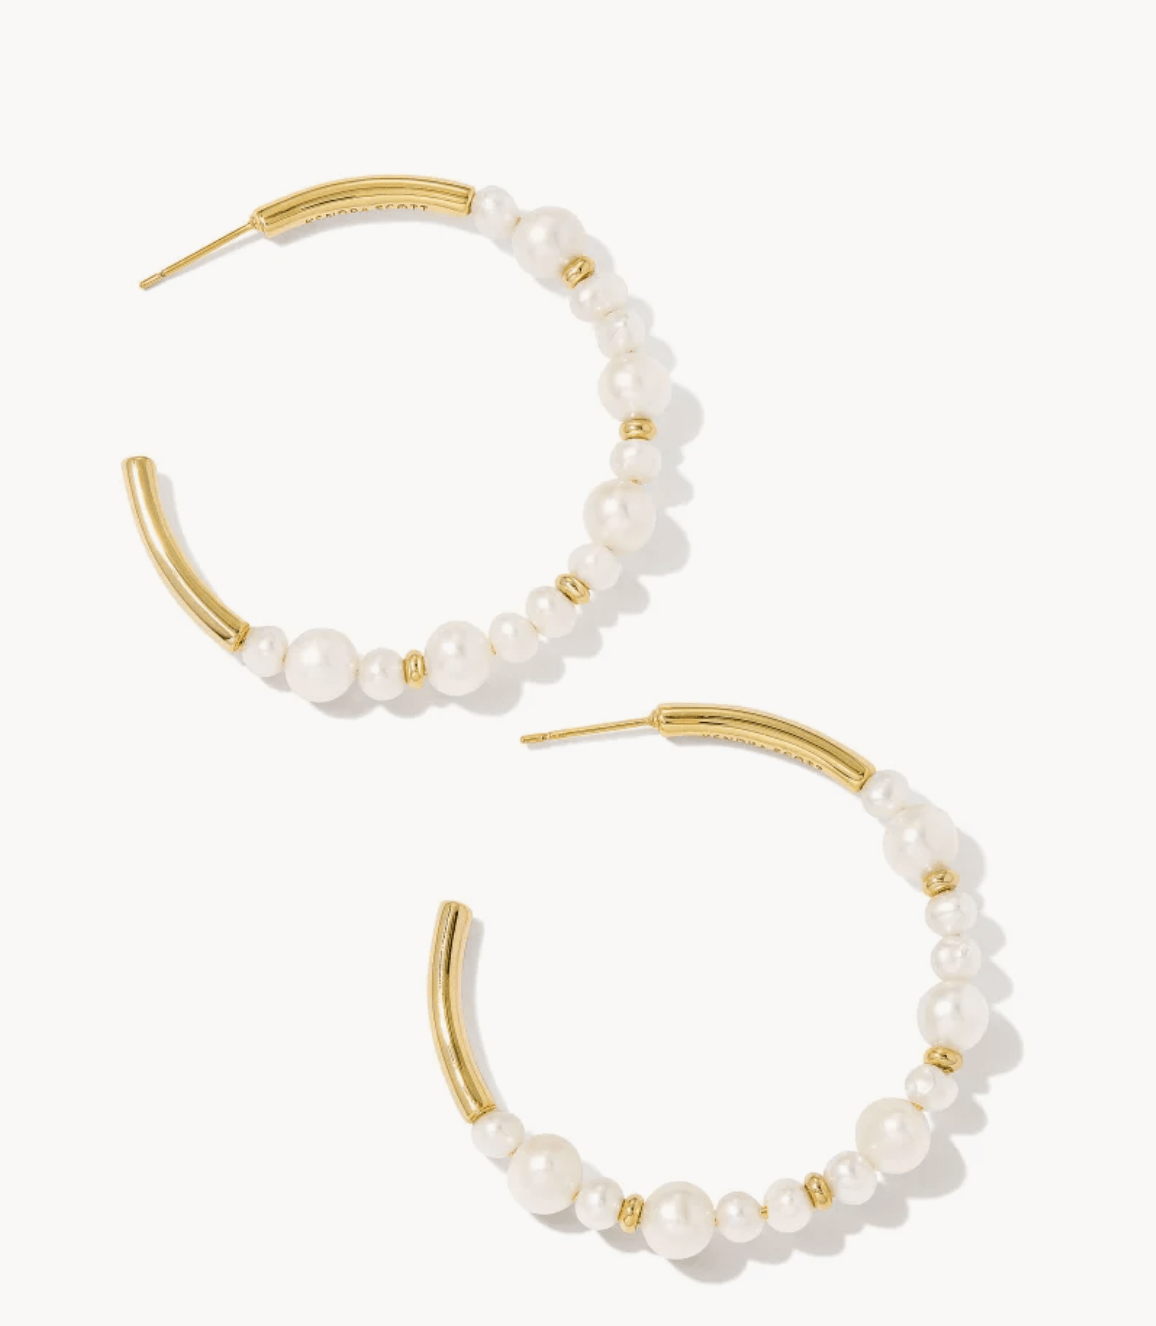 KENDRA SCOTT - Jovie Gold Beaded Hoop Earrings in White Pearl - Findlay Rowe Designs